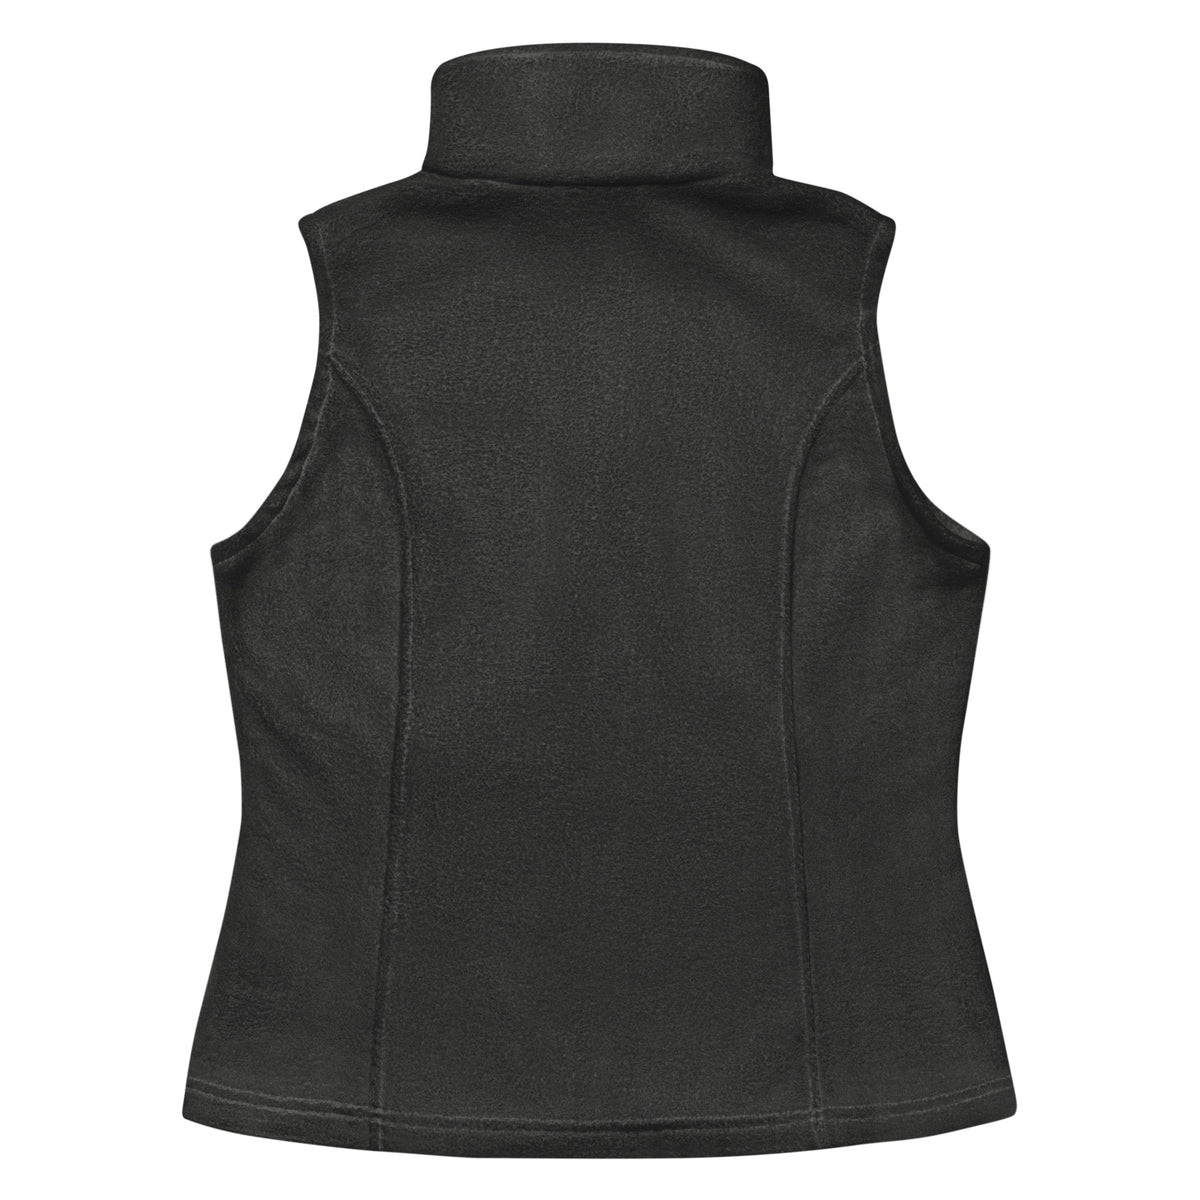 Women’s MUTNT Columbia fleece vest